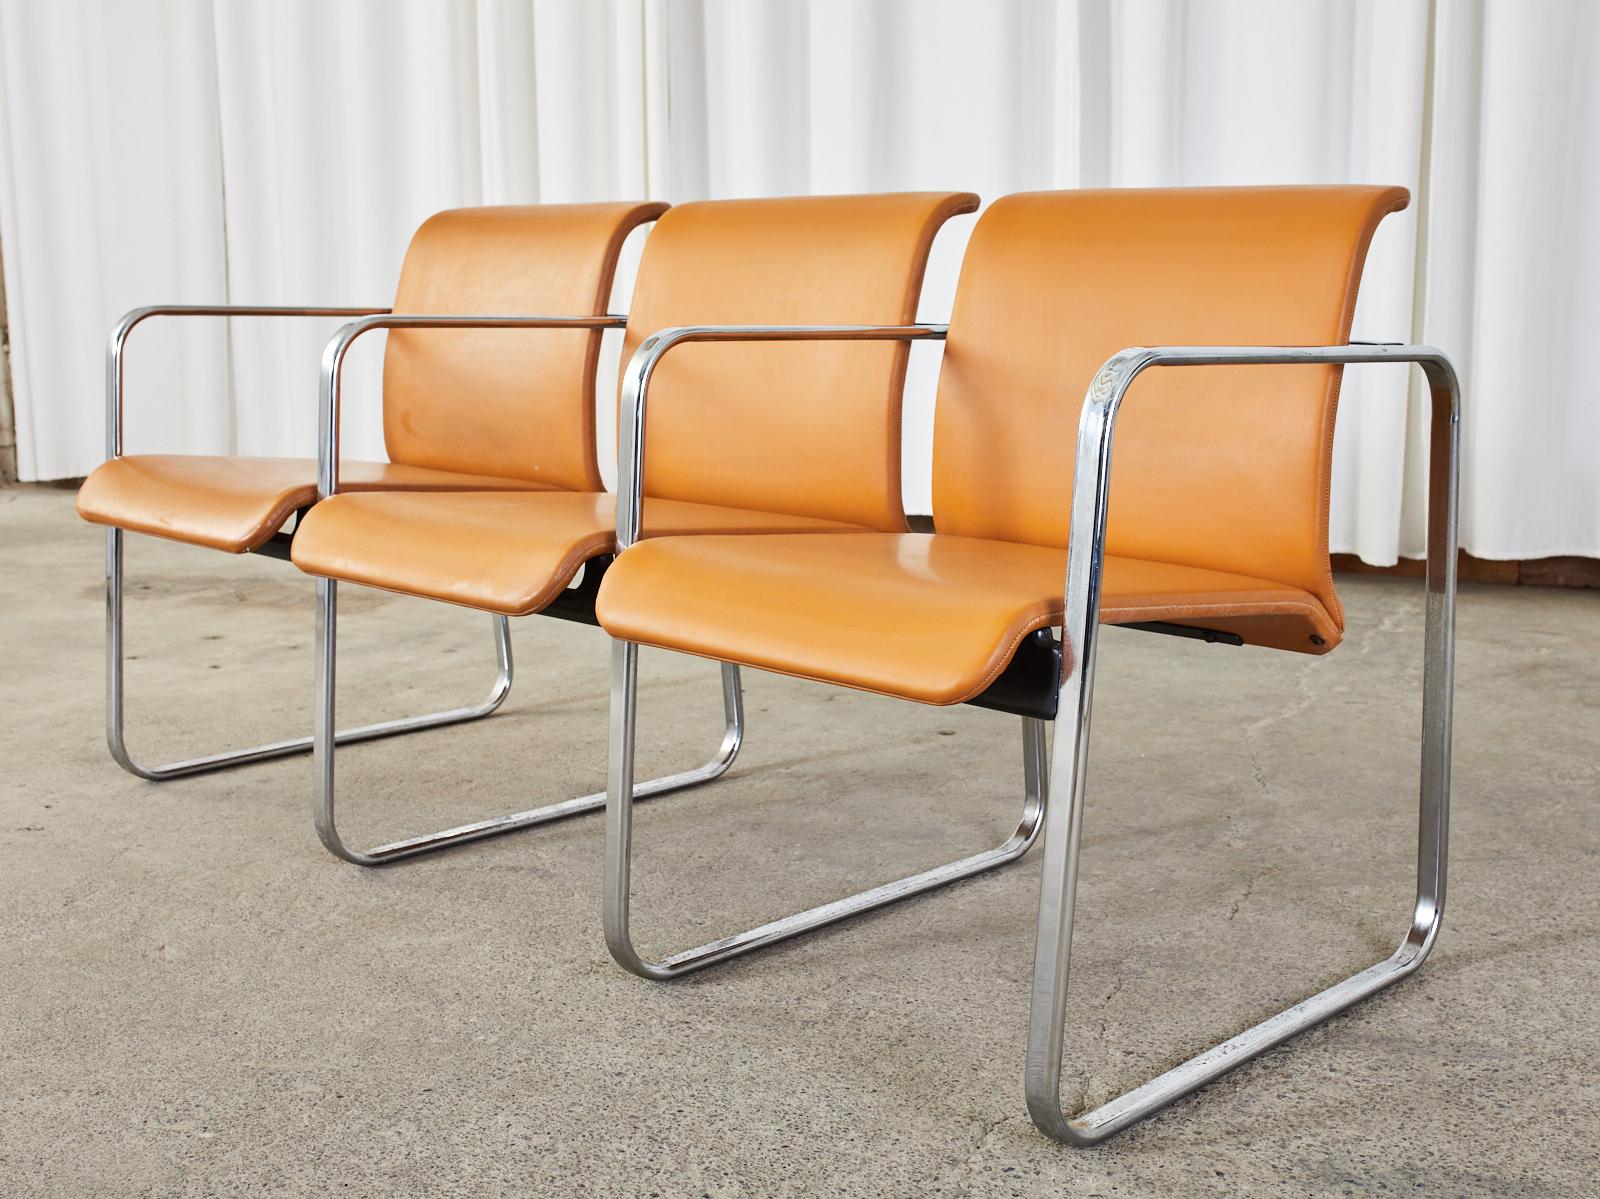 Rare fauteuil-banquette tandem à trois places du Mid-Century Modern, conçu par Peter Protzman pour Herman Miller. La chaise est fabriquée en acier tubulaire à barre plate avec une finition chromée. Un ensemble de quatre carrés chromés pour les